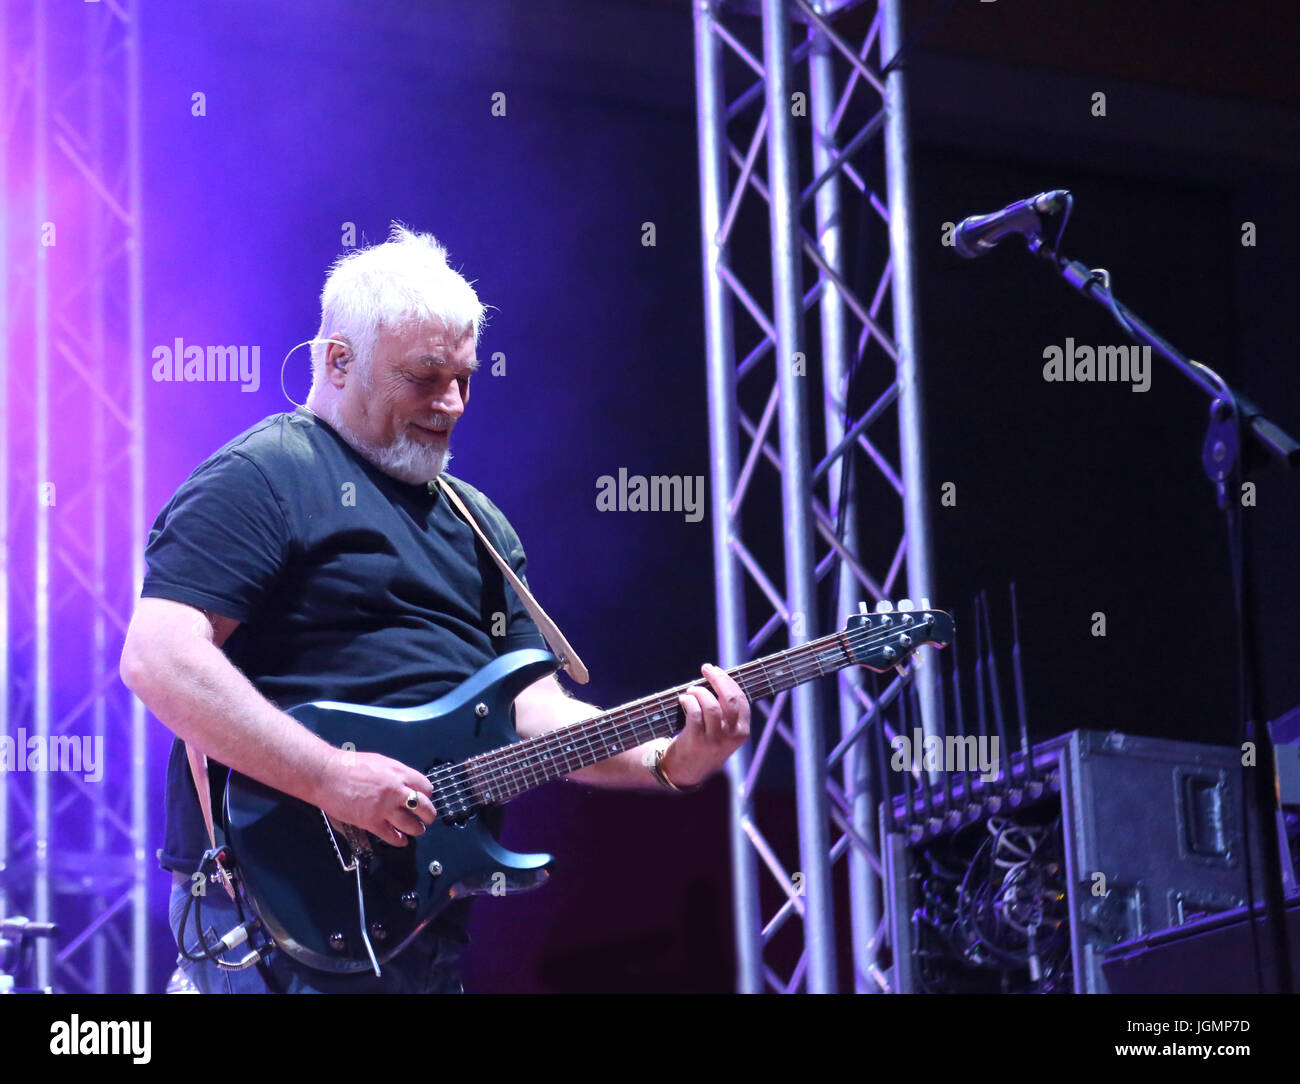 Bassano del Grappa, VI, Italia - 29 Aprile 2017: Falzone Cico chitarrista dei Nomadi un italiano gruppo musicale durante un concerto dal vivo Foto Stock